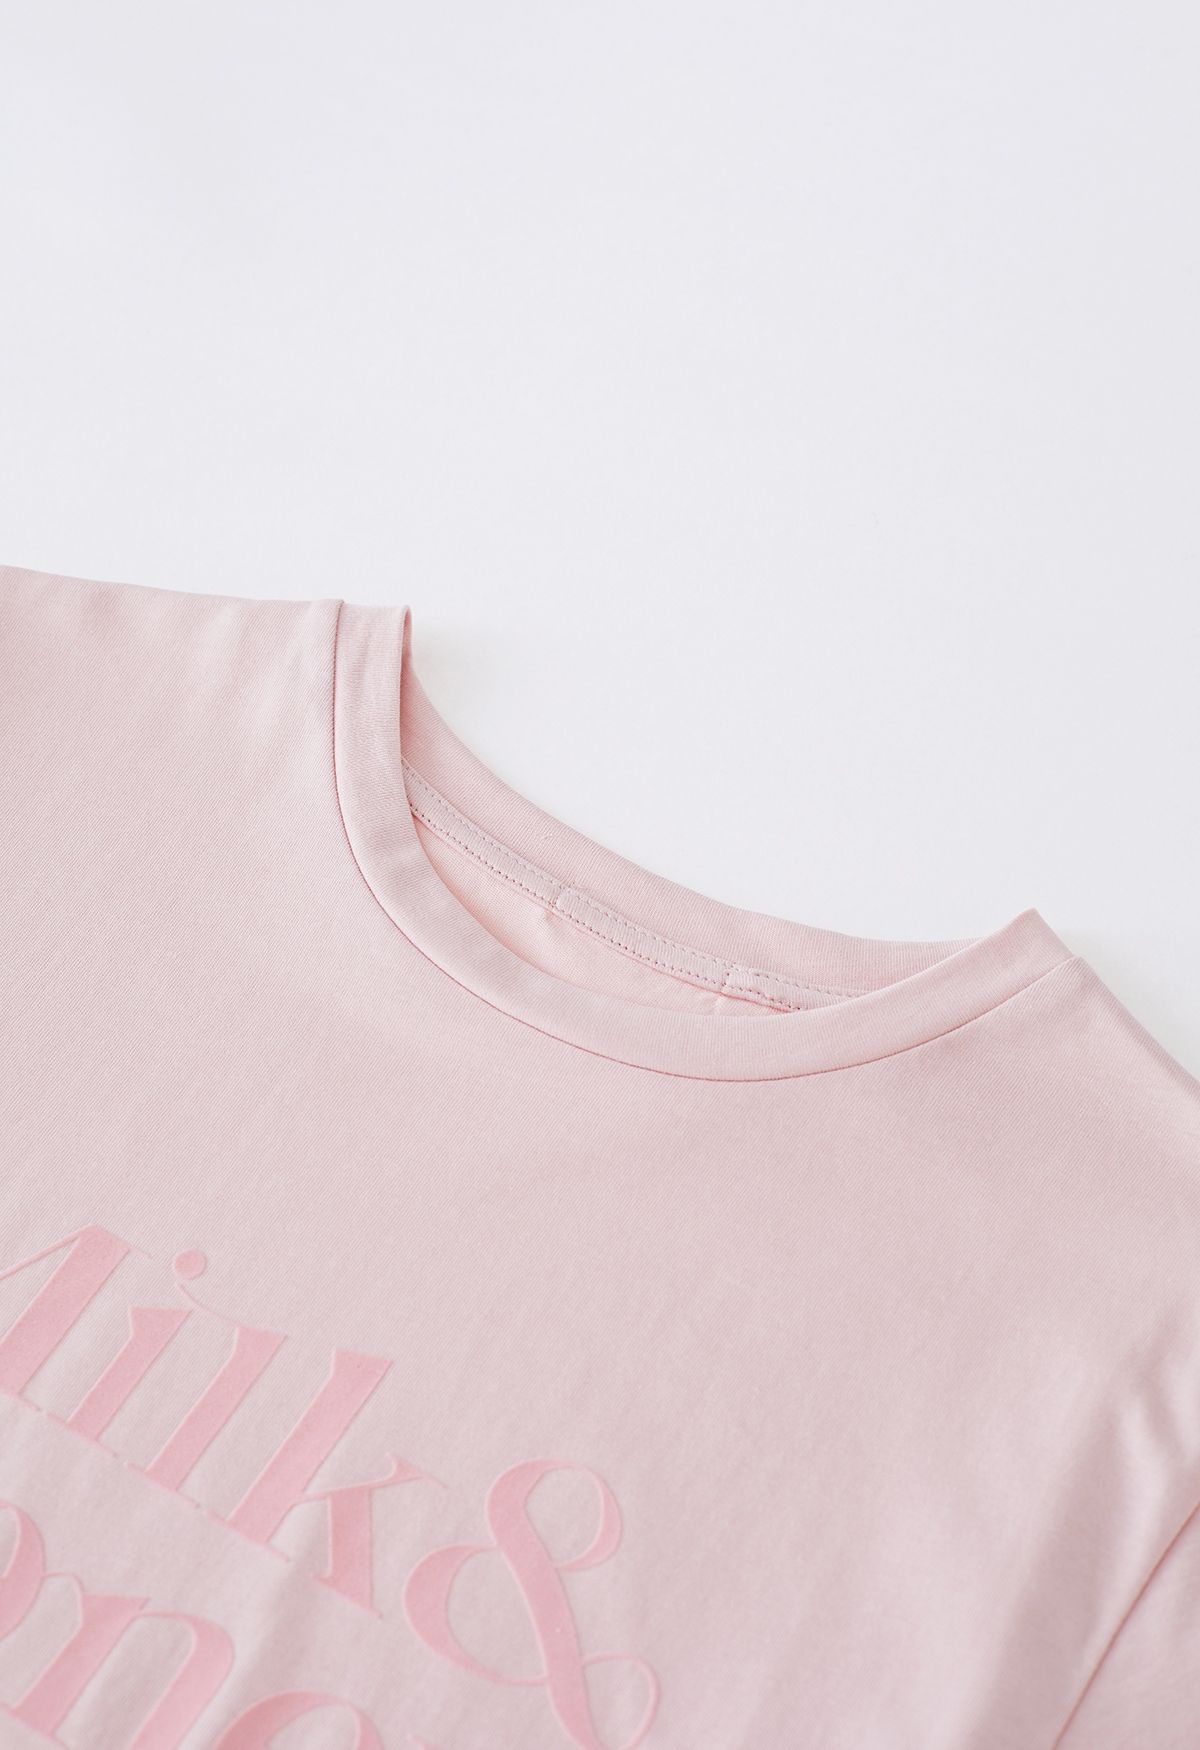 Camiseta de cuello redondo con letras de terciopelo en rosa